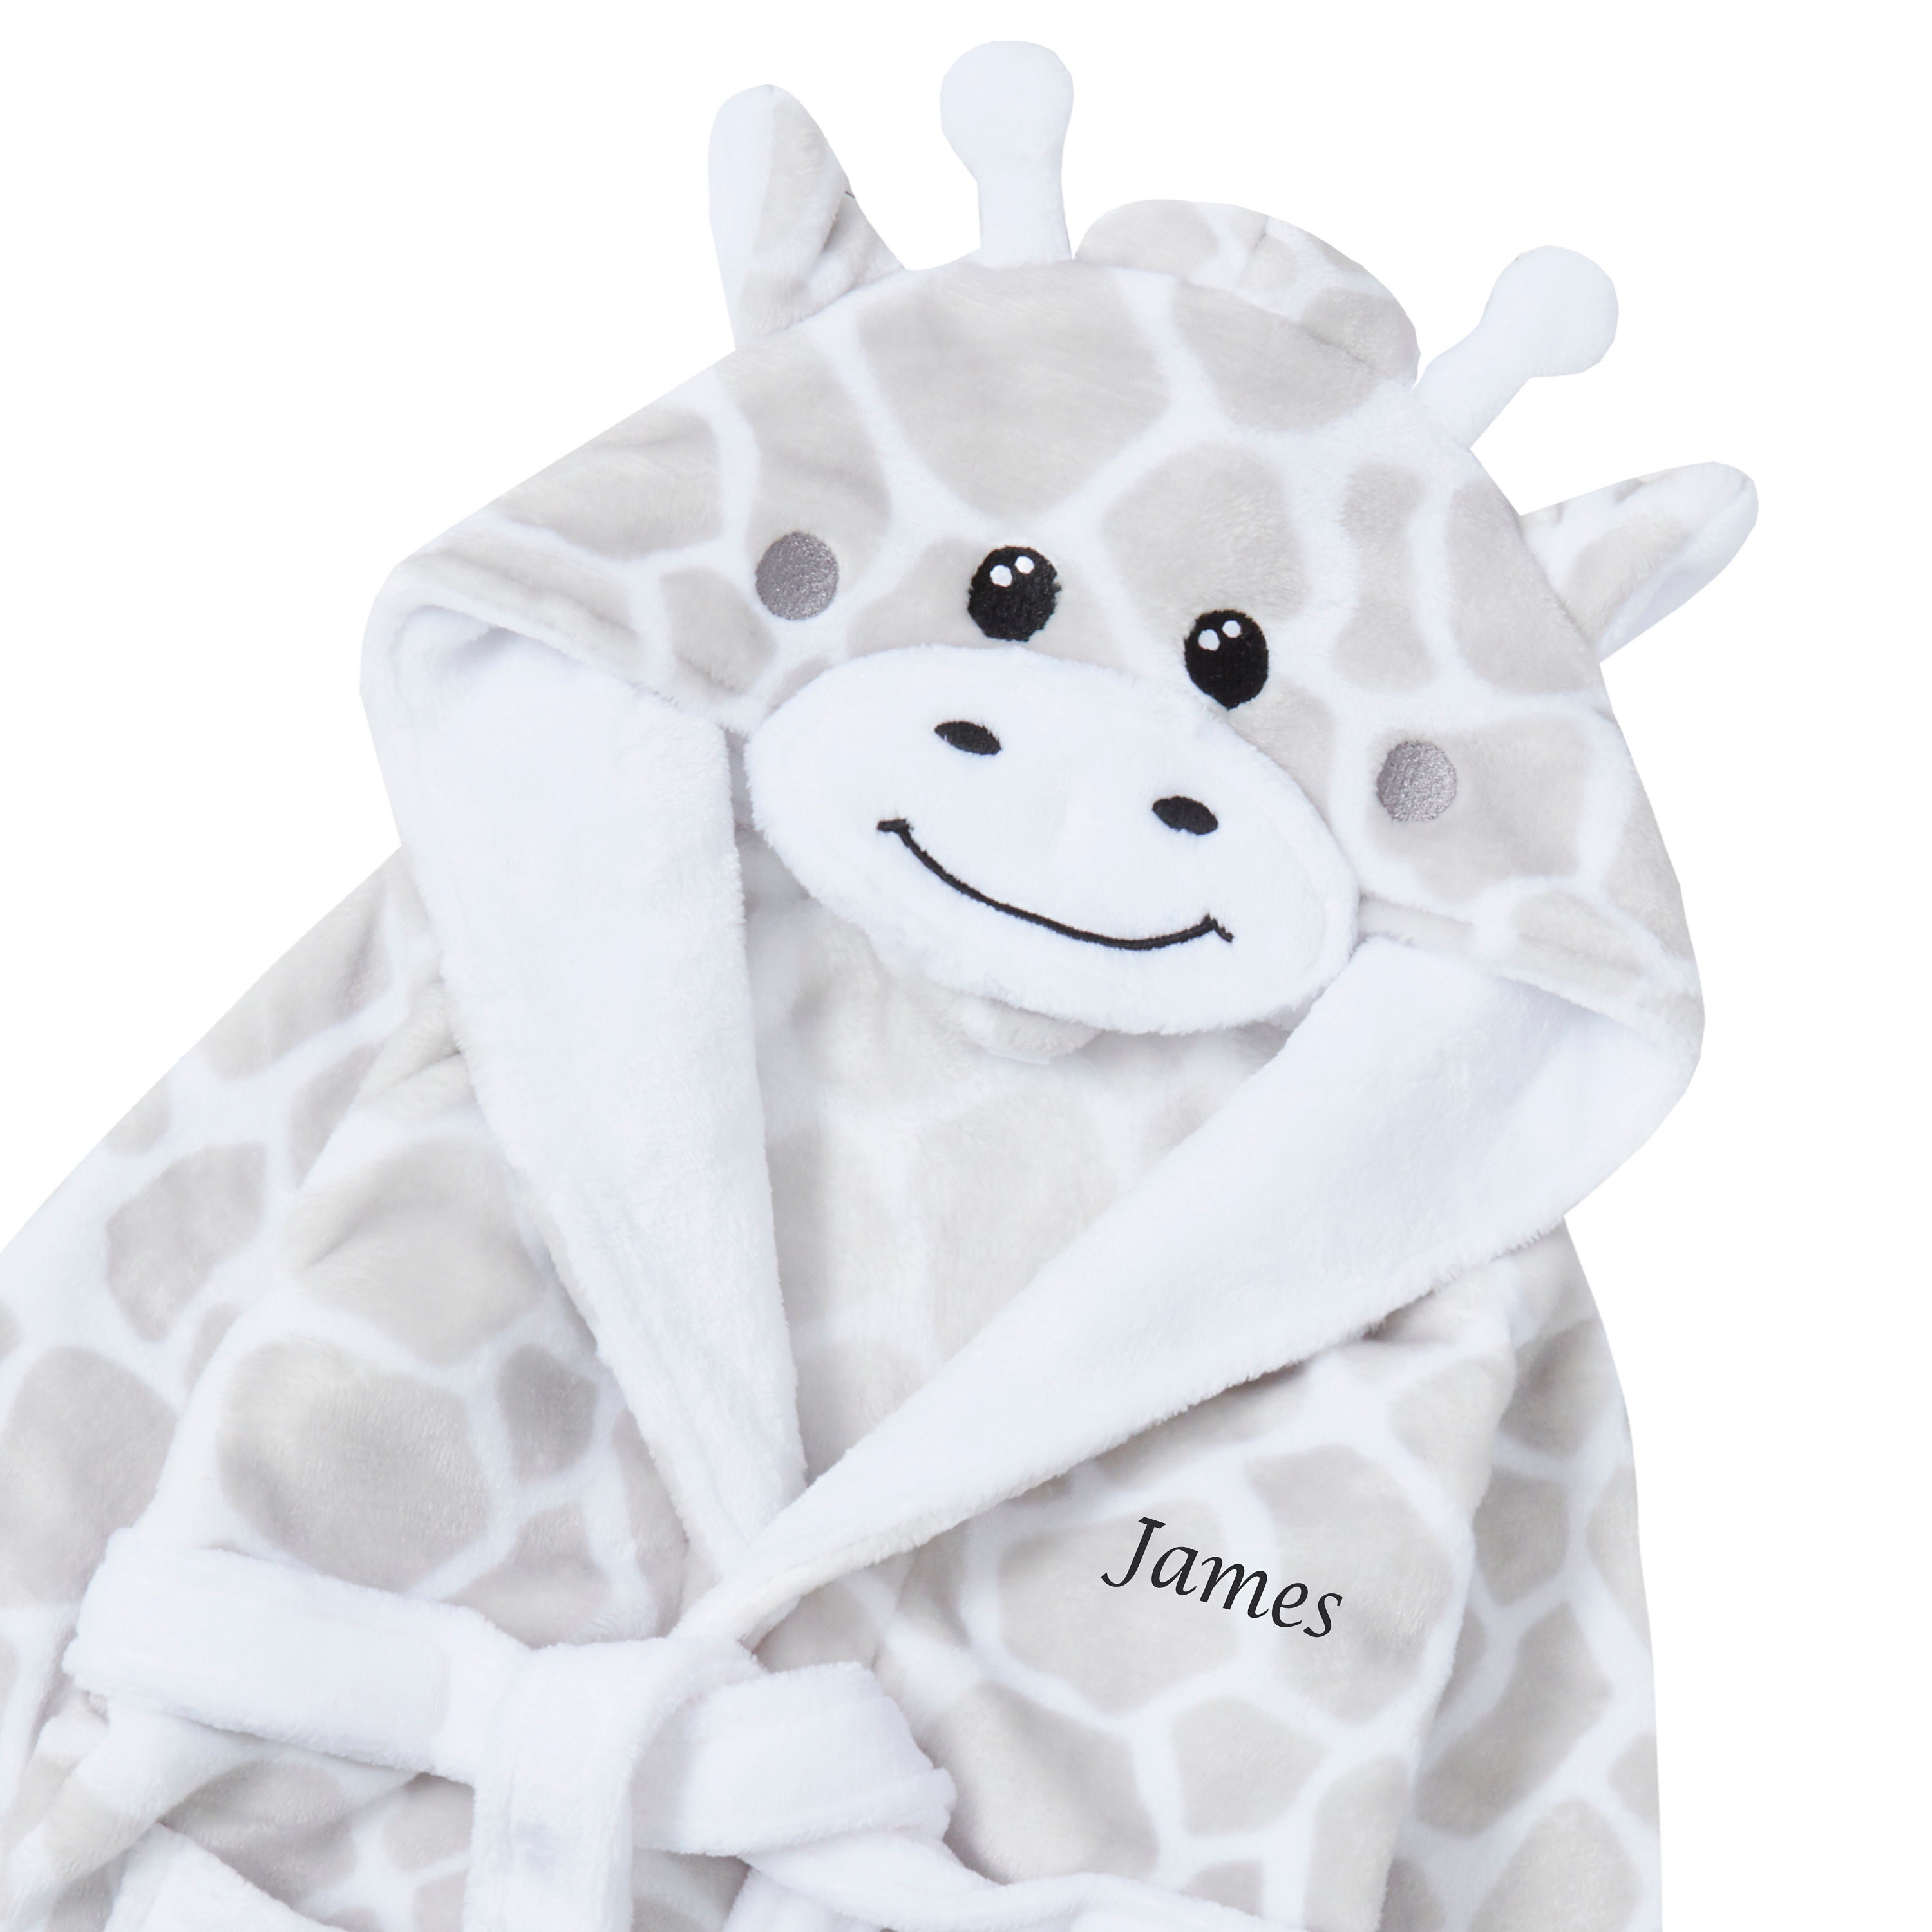 Kleding Unisex kinderkleding Unisex babykleding Pyjamas & Badjassen Personalised Dressing Gown for Baby Gorgeous Giraffe Design 6-12 Months 12-18 Months and 18-24 Months 